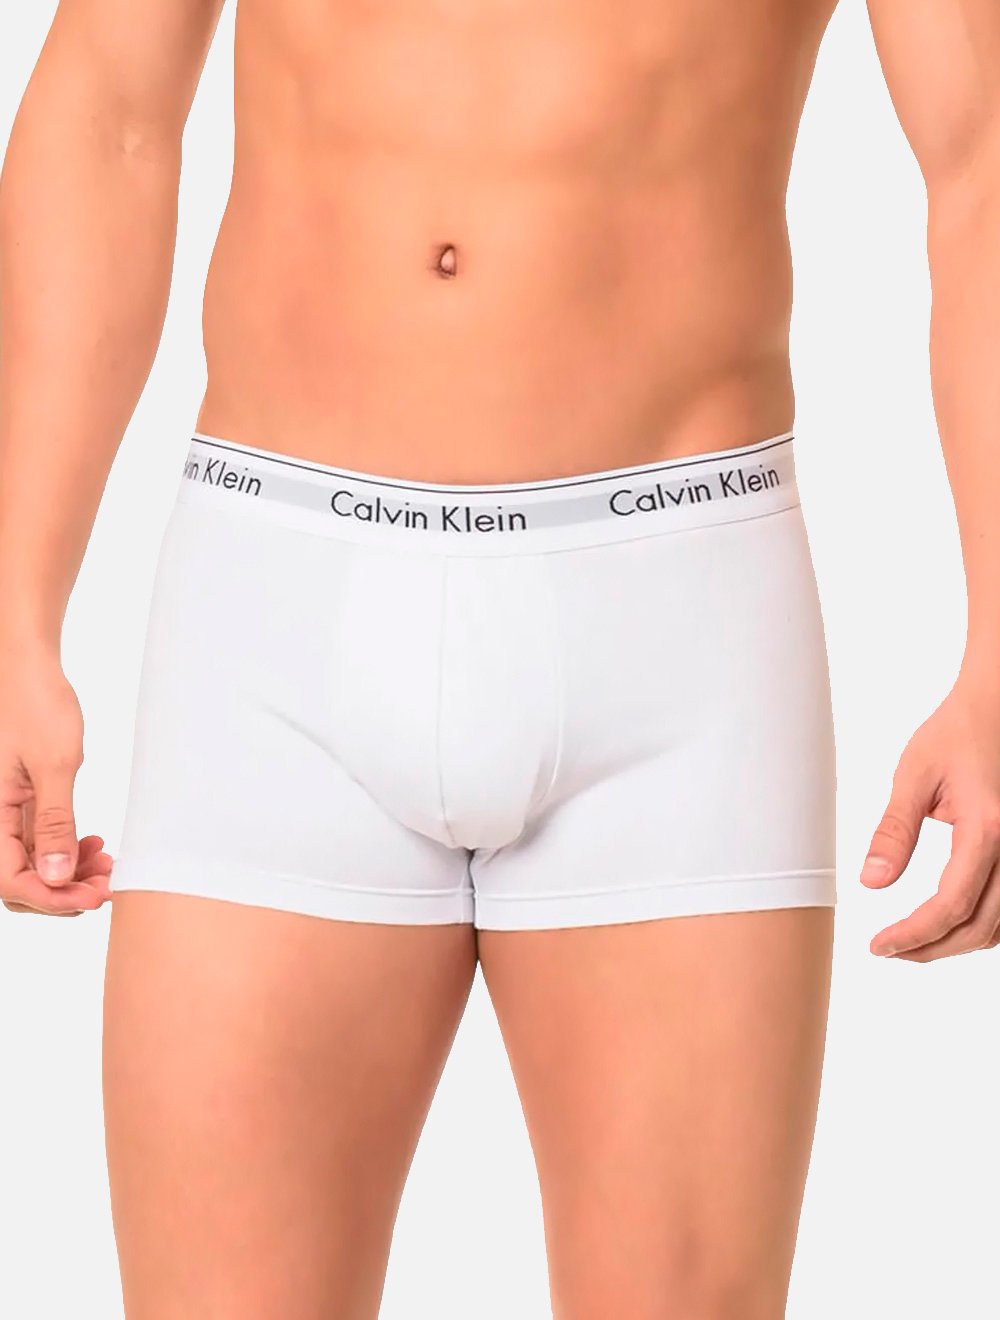 Cuecas Calvin Klein Trunk Modern Cotton Branca Pack 2UN